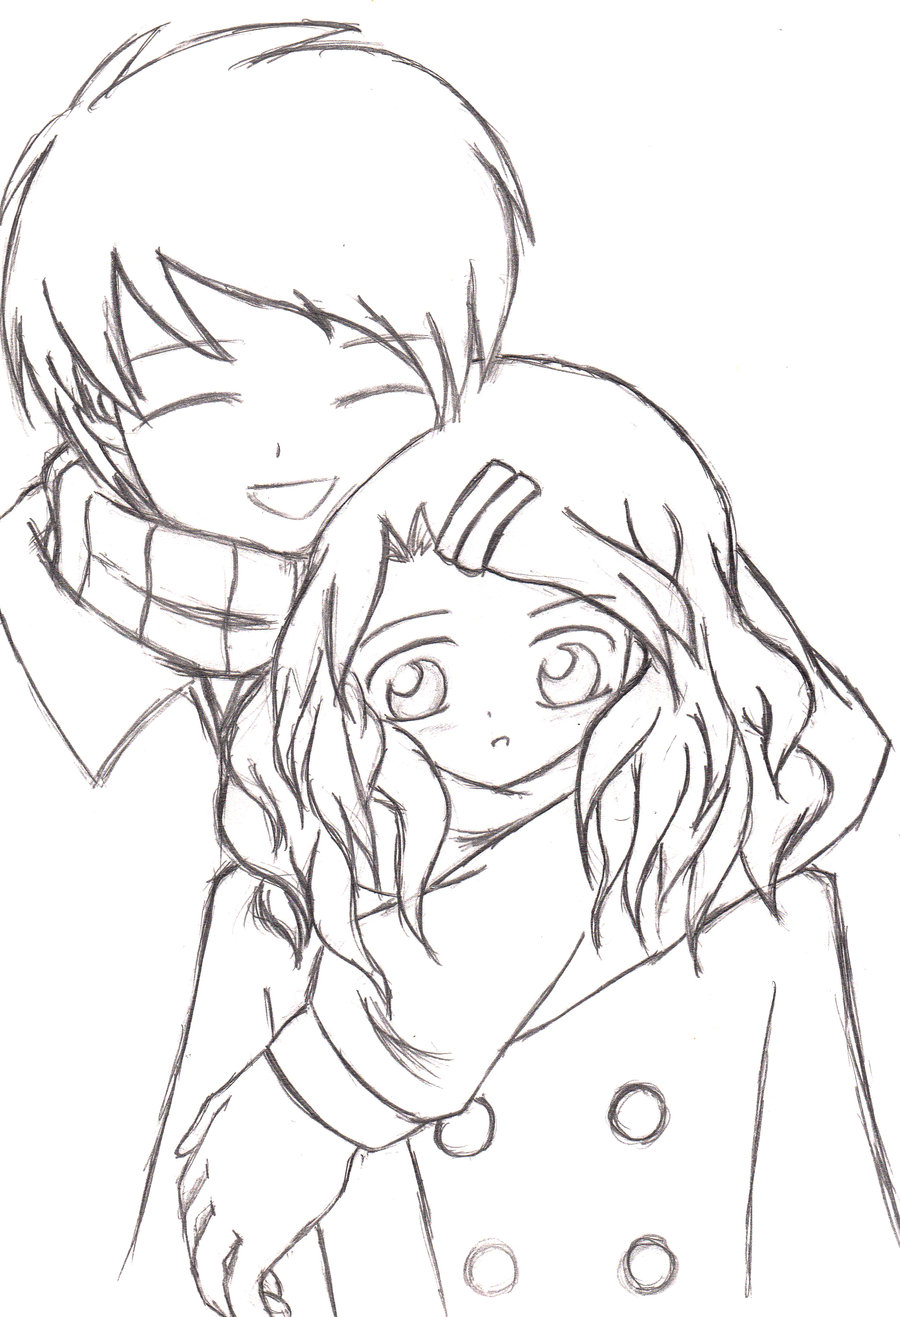 Boy And Girl Hugging Drawing at GetDrawings | Free download
 Boy And Girl Hugging Drawing